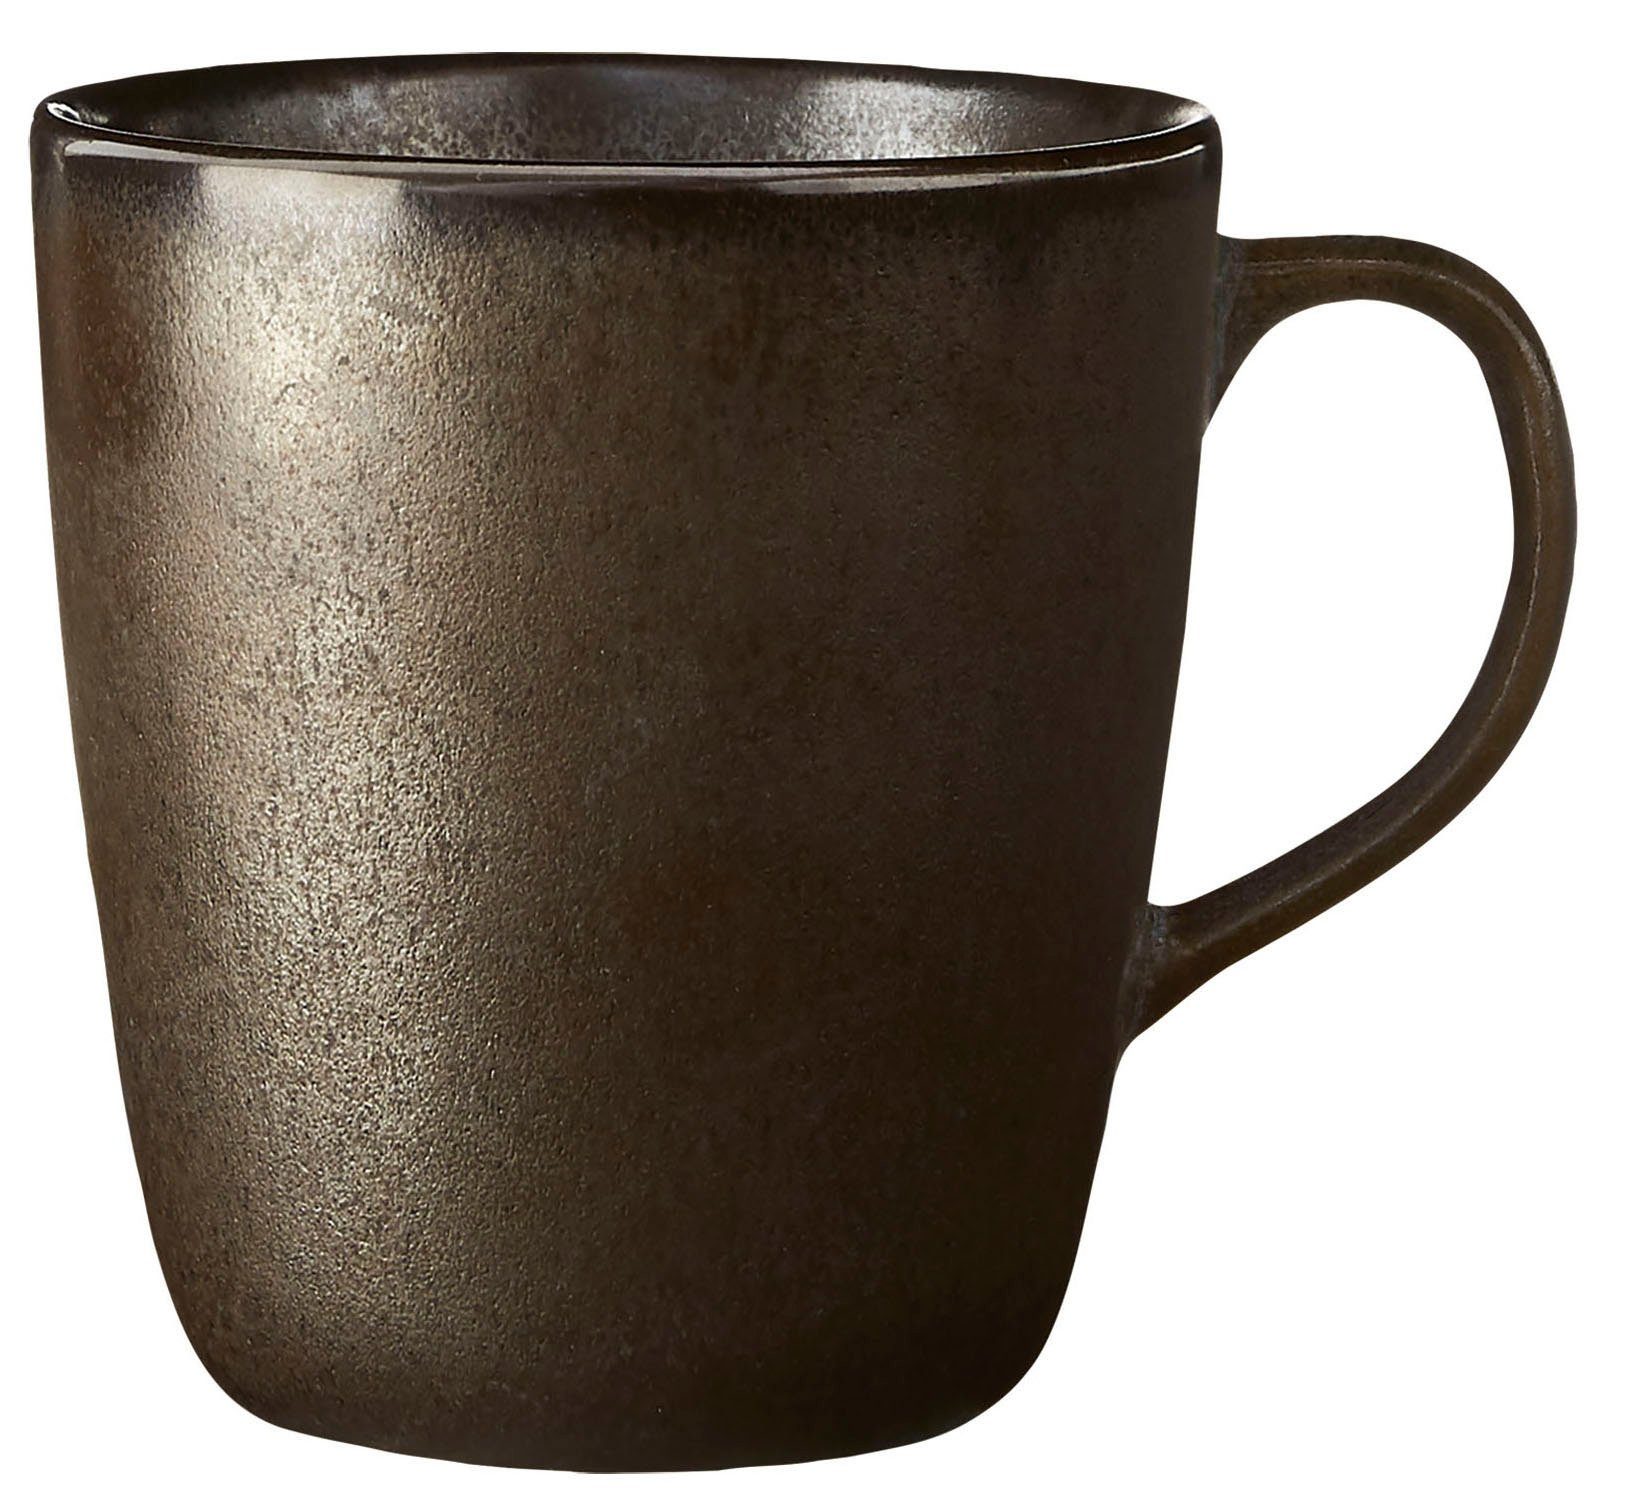 Einkaufen genießen aida RAW Tasse 6-teilig cl, 35 Metallic Steinzeug, Brown